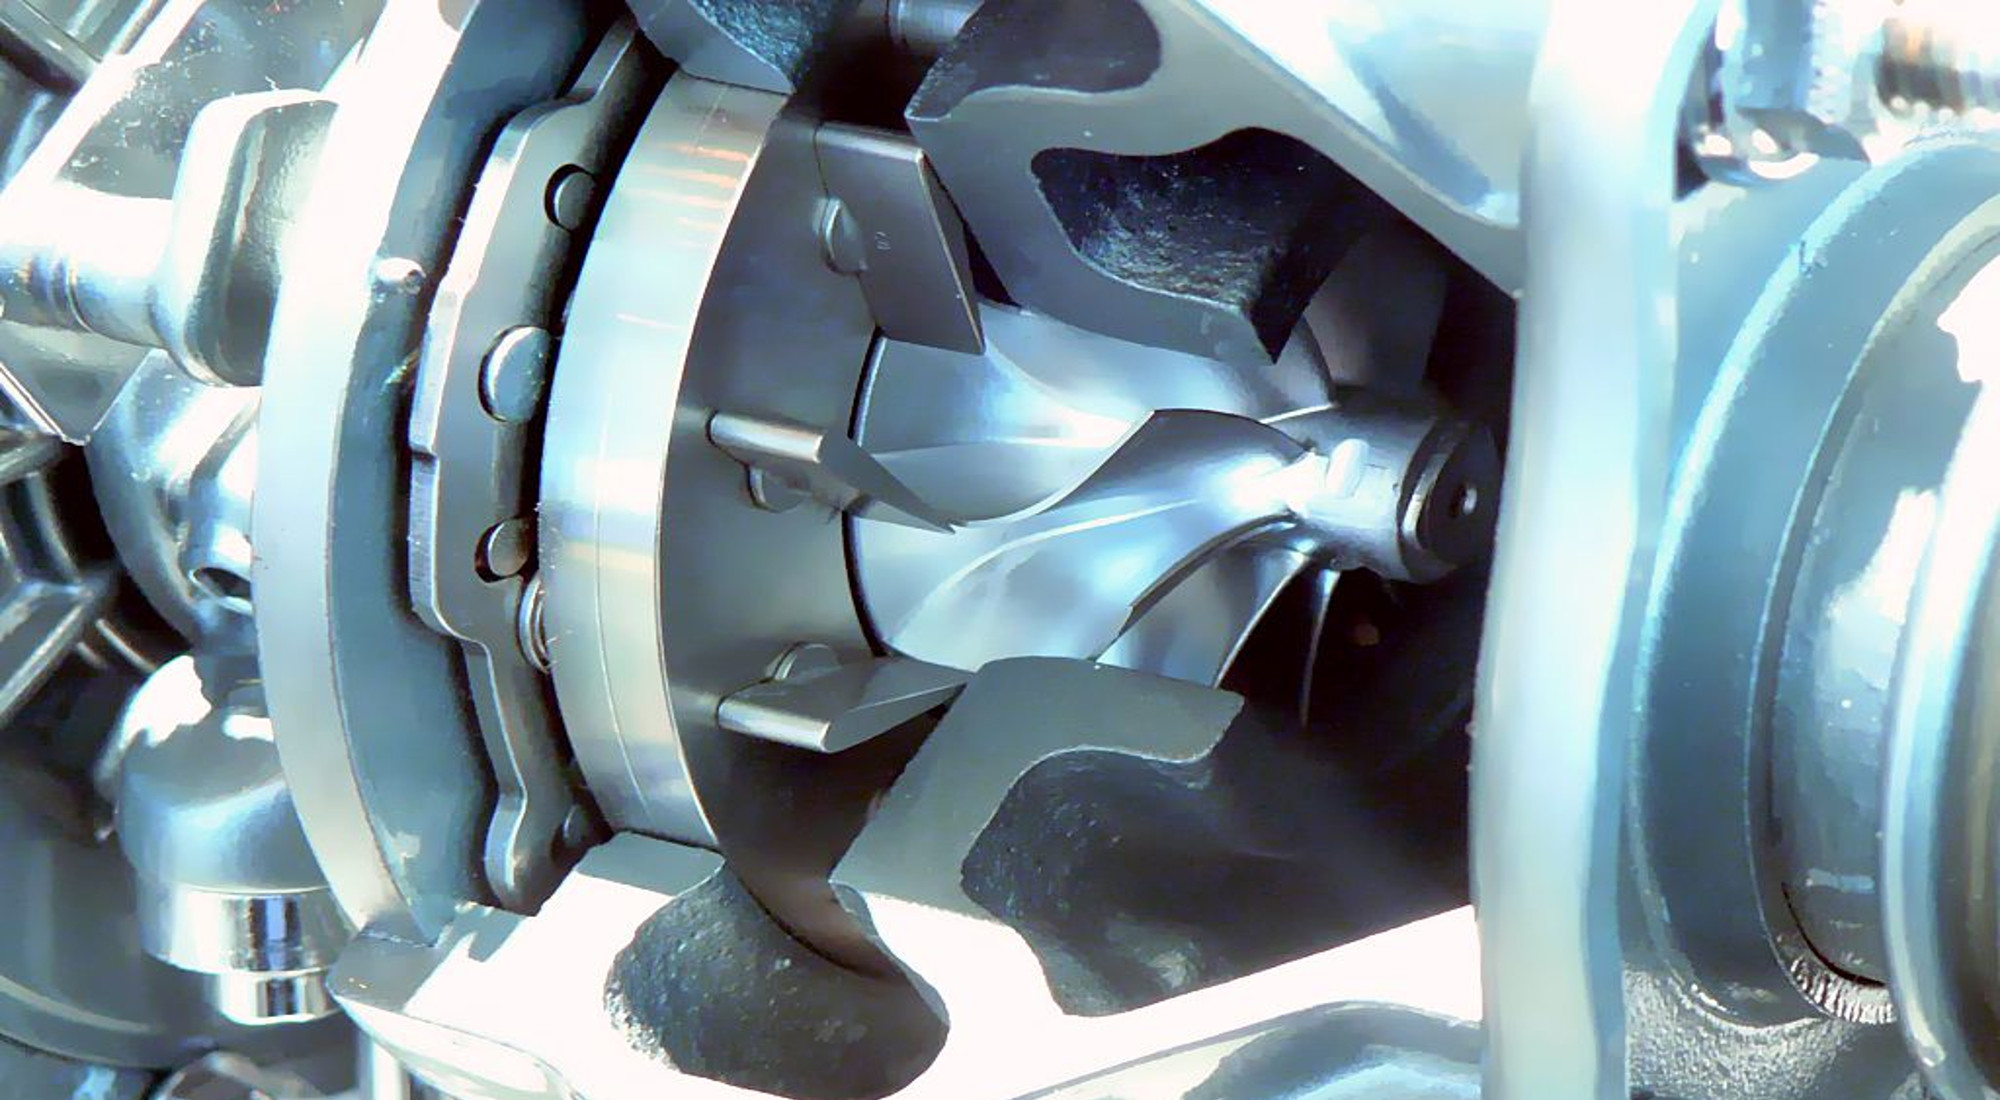 revisione turbina turbo compressori rettifiche motori siena toscana